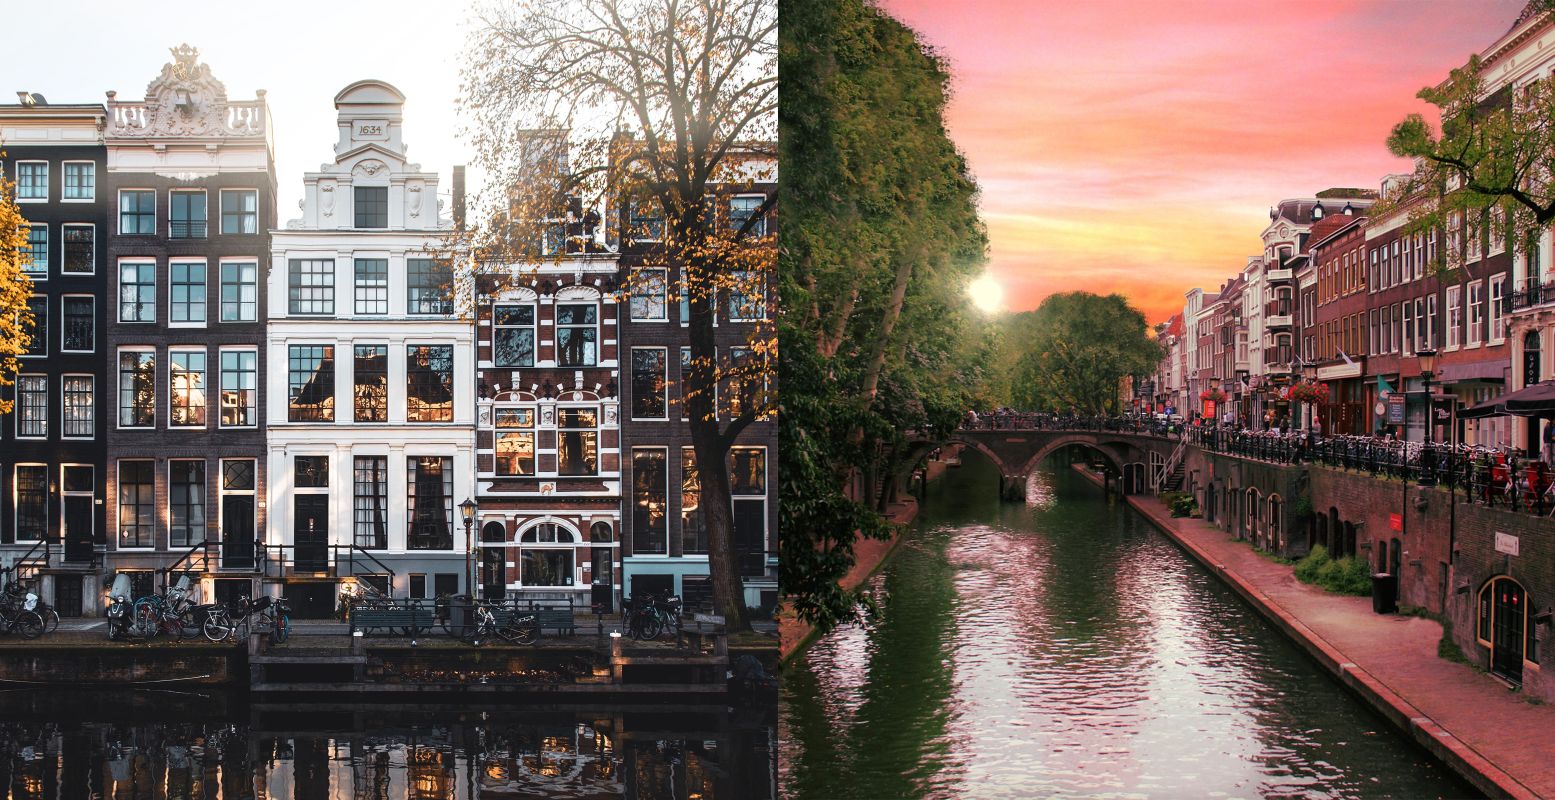 De grachten van Amsterdam (links) en Utrecht (rechts). Foto:  Matheo JBT  on  Unsplash  /  piccolomondo  via  Pixabay 